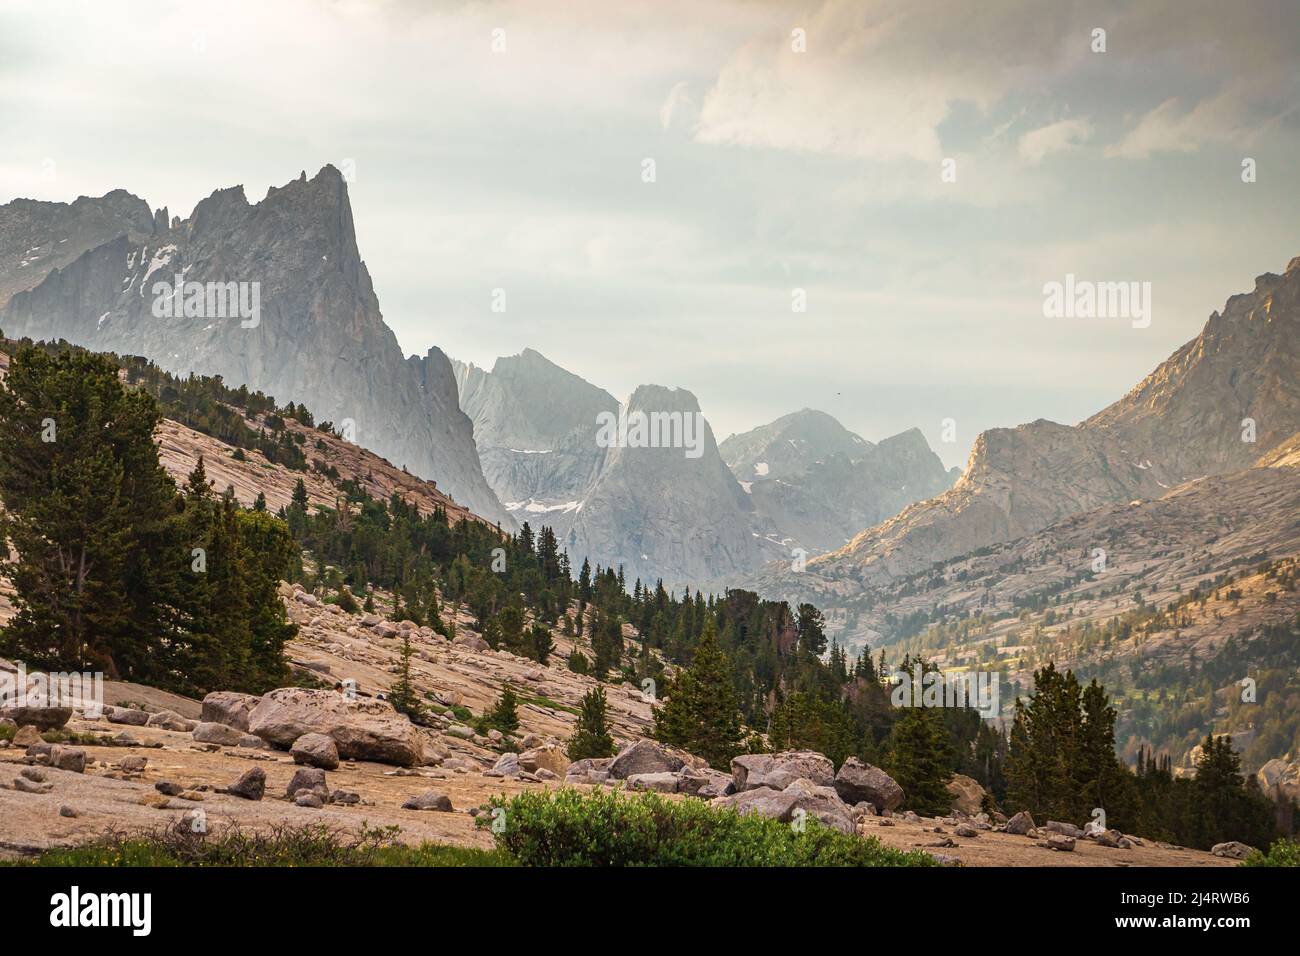 Vista panorámica de un valle montañoso después de una tormenta de granizo en un día de verano en la cadena montañosa Wind River, Wyoming, Estados Unidos Foto de stock